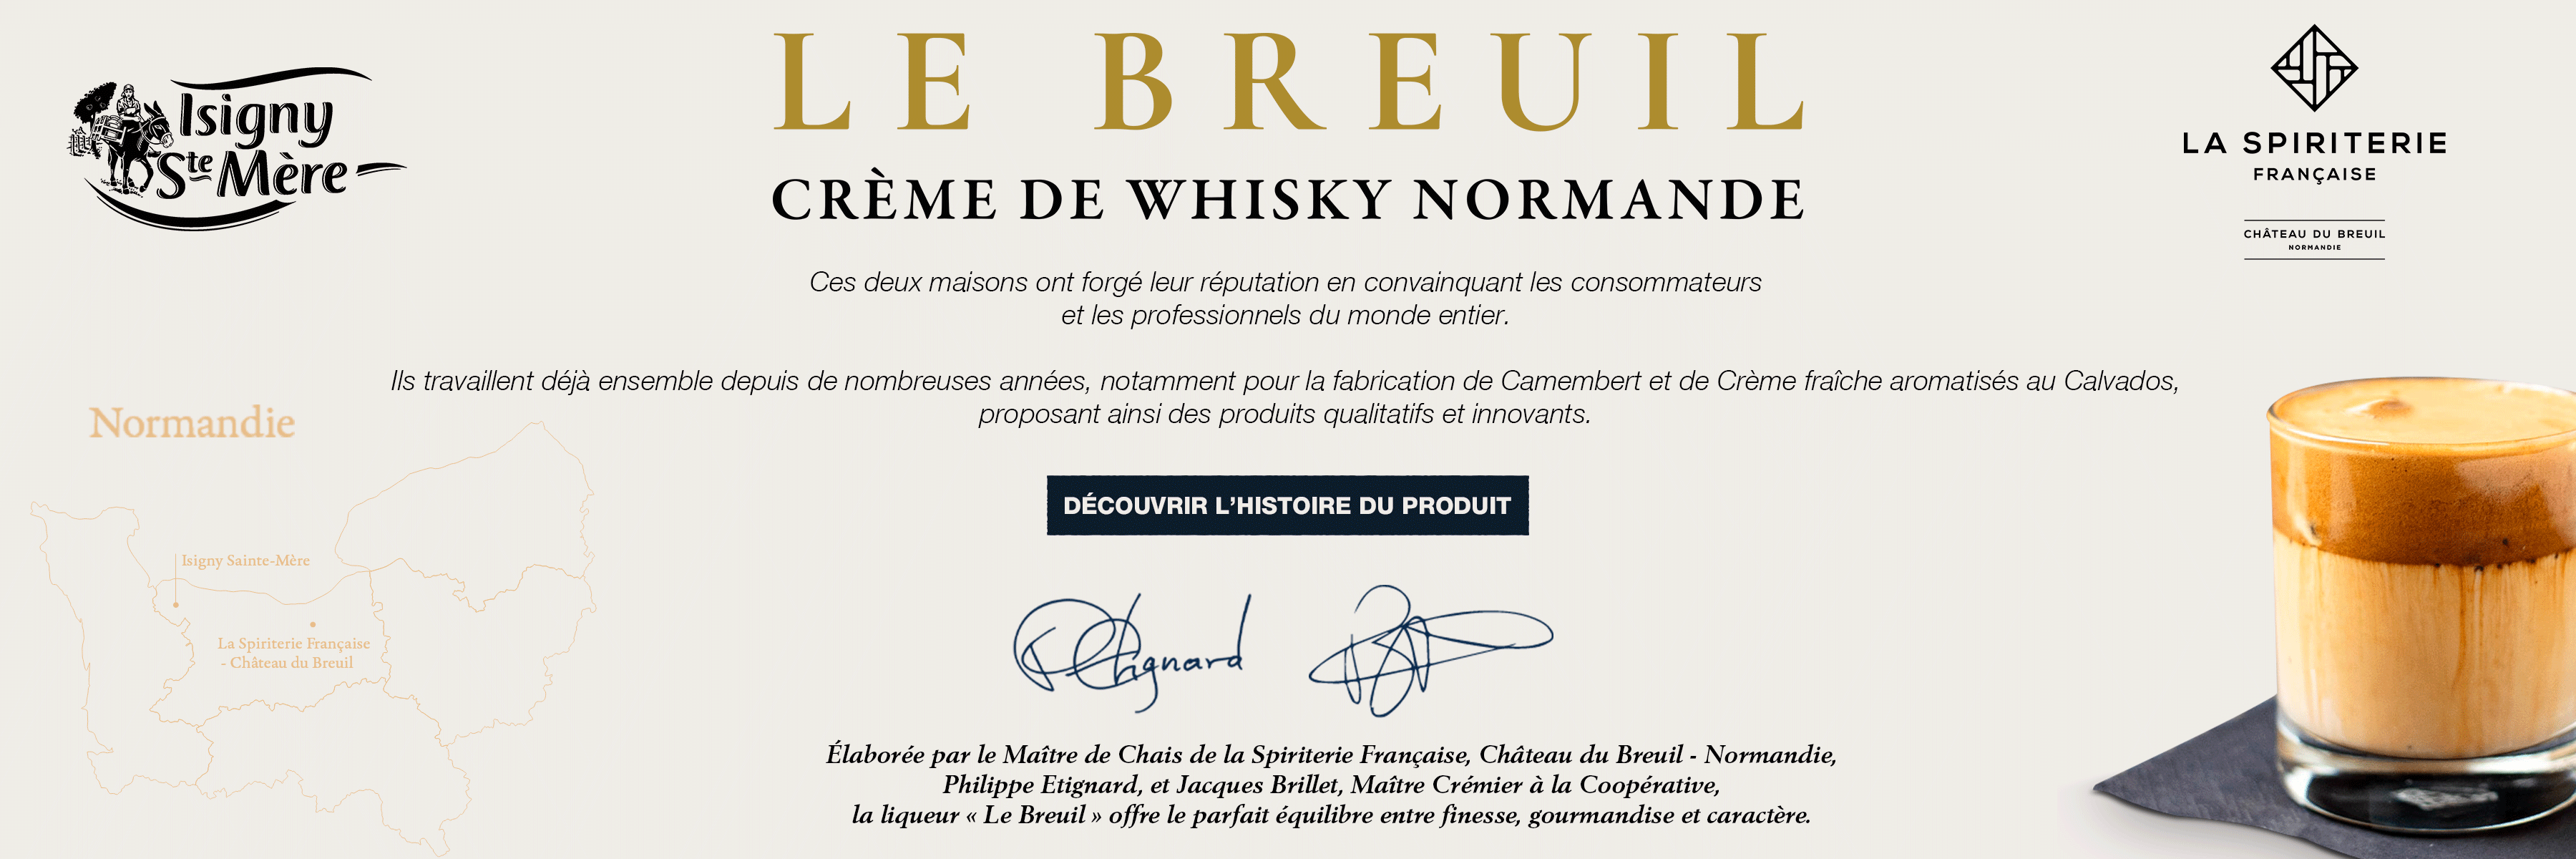 Creme-de-Whisky-Normande-Le-Breuil---Alliance-de-deux-maisons